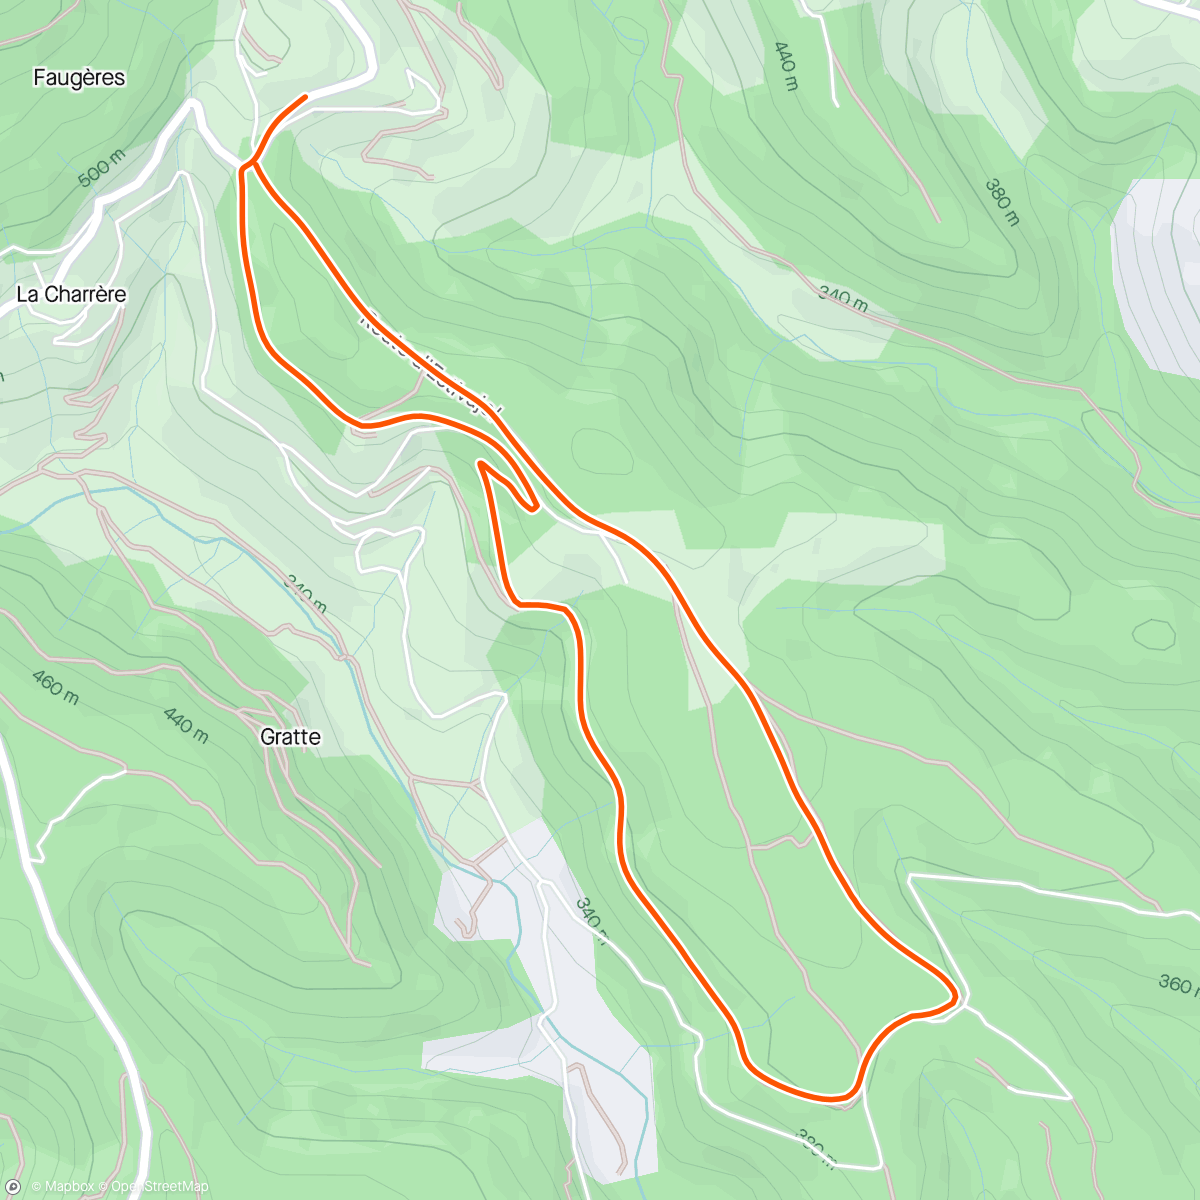 「Trail l'après-midi」活動的地圖